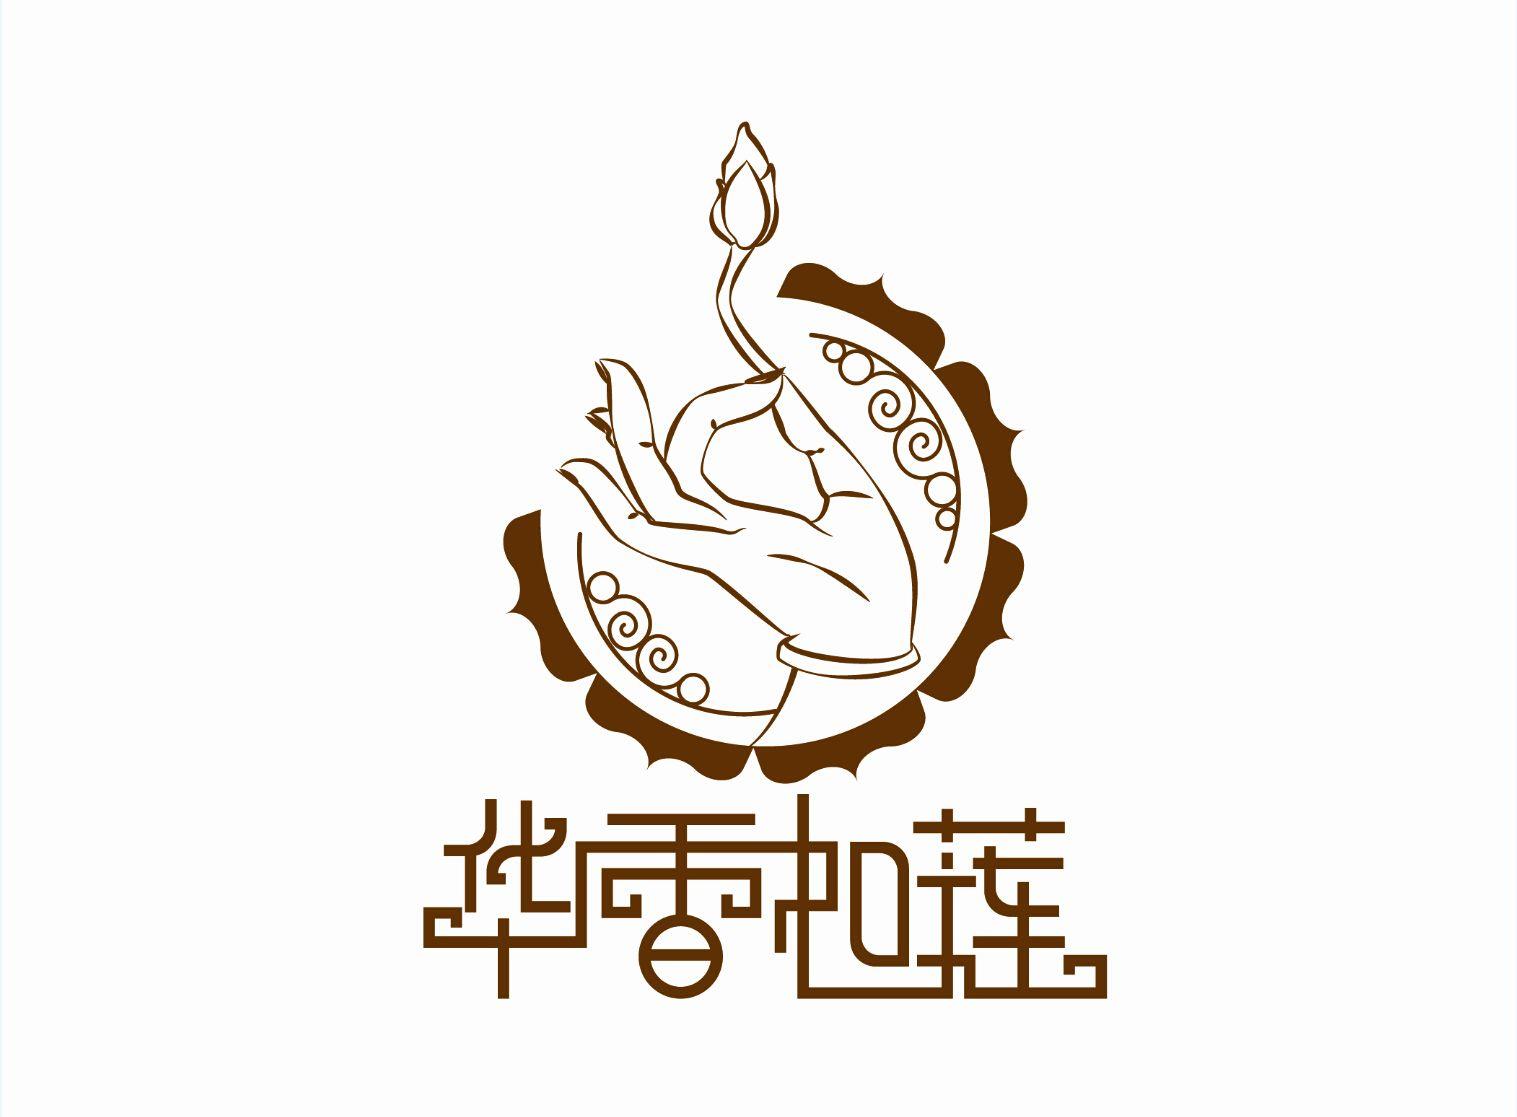 Buddhist Logo - logo lotus；buddha. logo. Logos, Buddha logo, Buddha